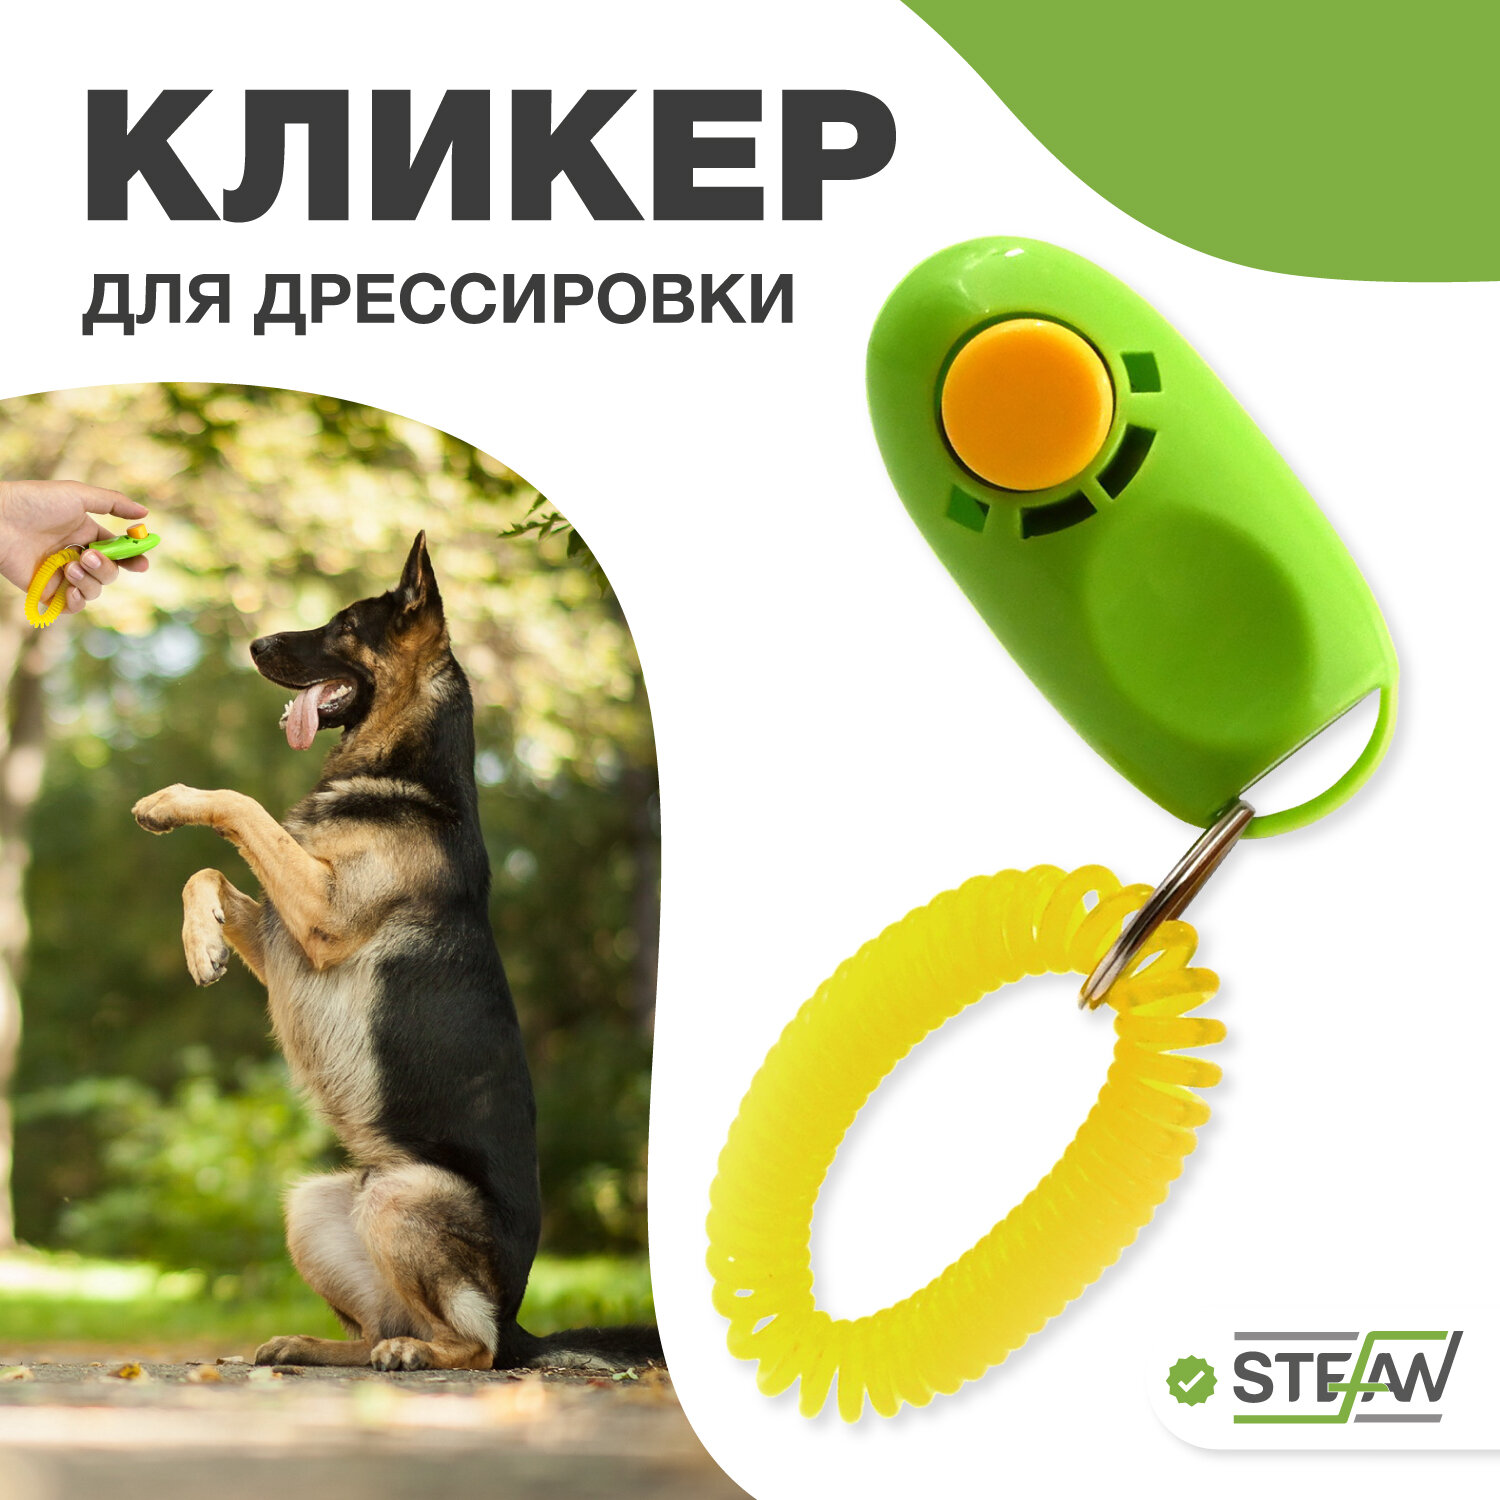 Кликер Штефан для дрессировки собаки GCT40